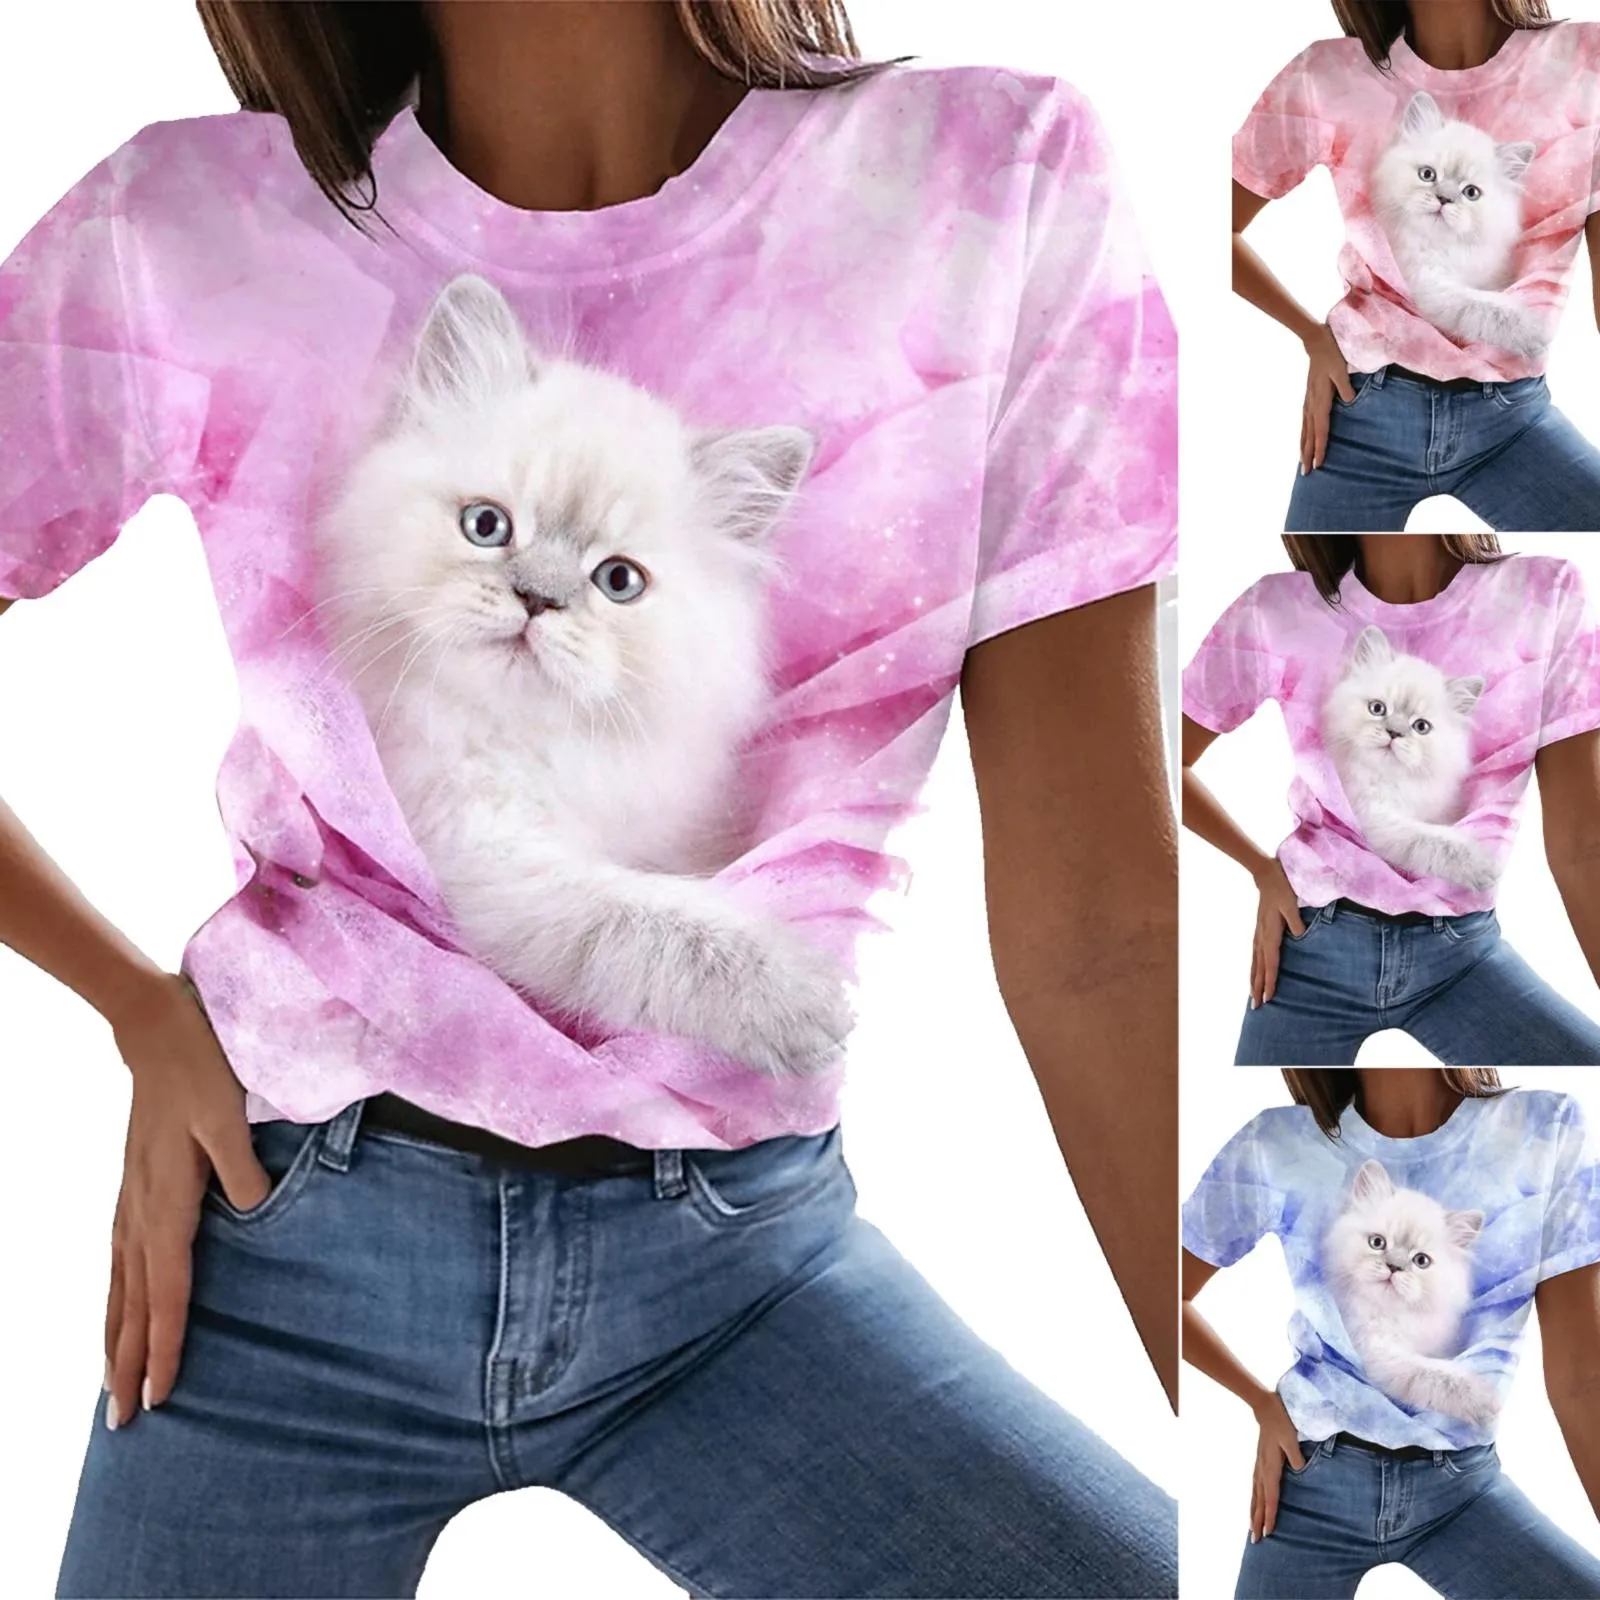 

Cat Digital Printed Short Sleeve Crewneck T Shirt Women Summer Spandex Cotton Shirt Women